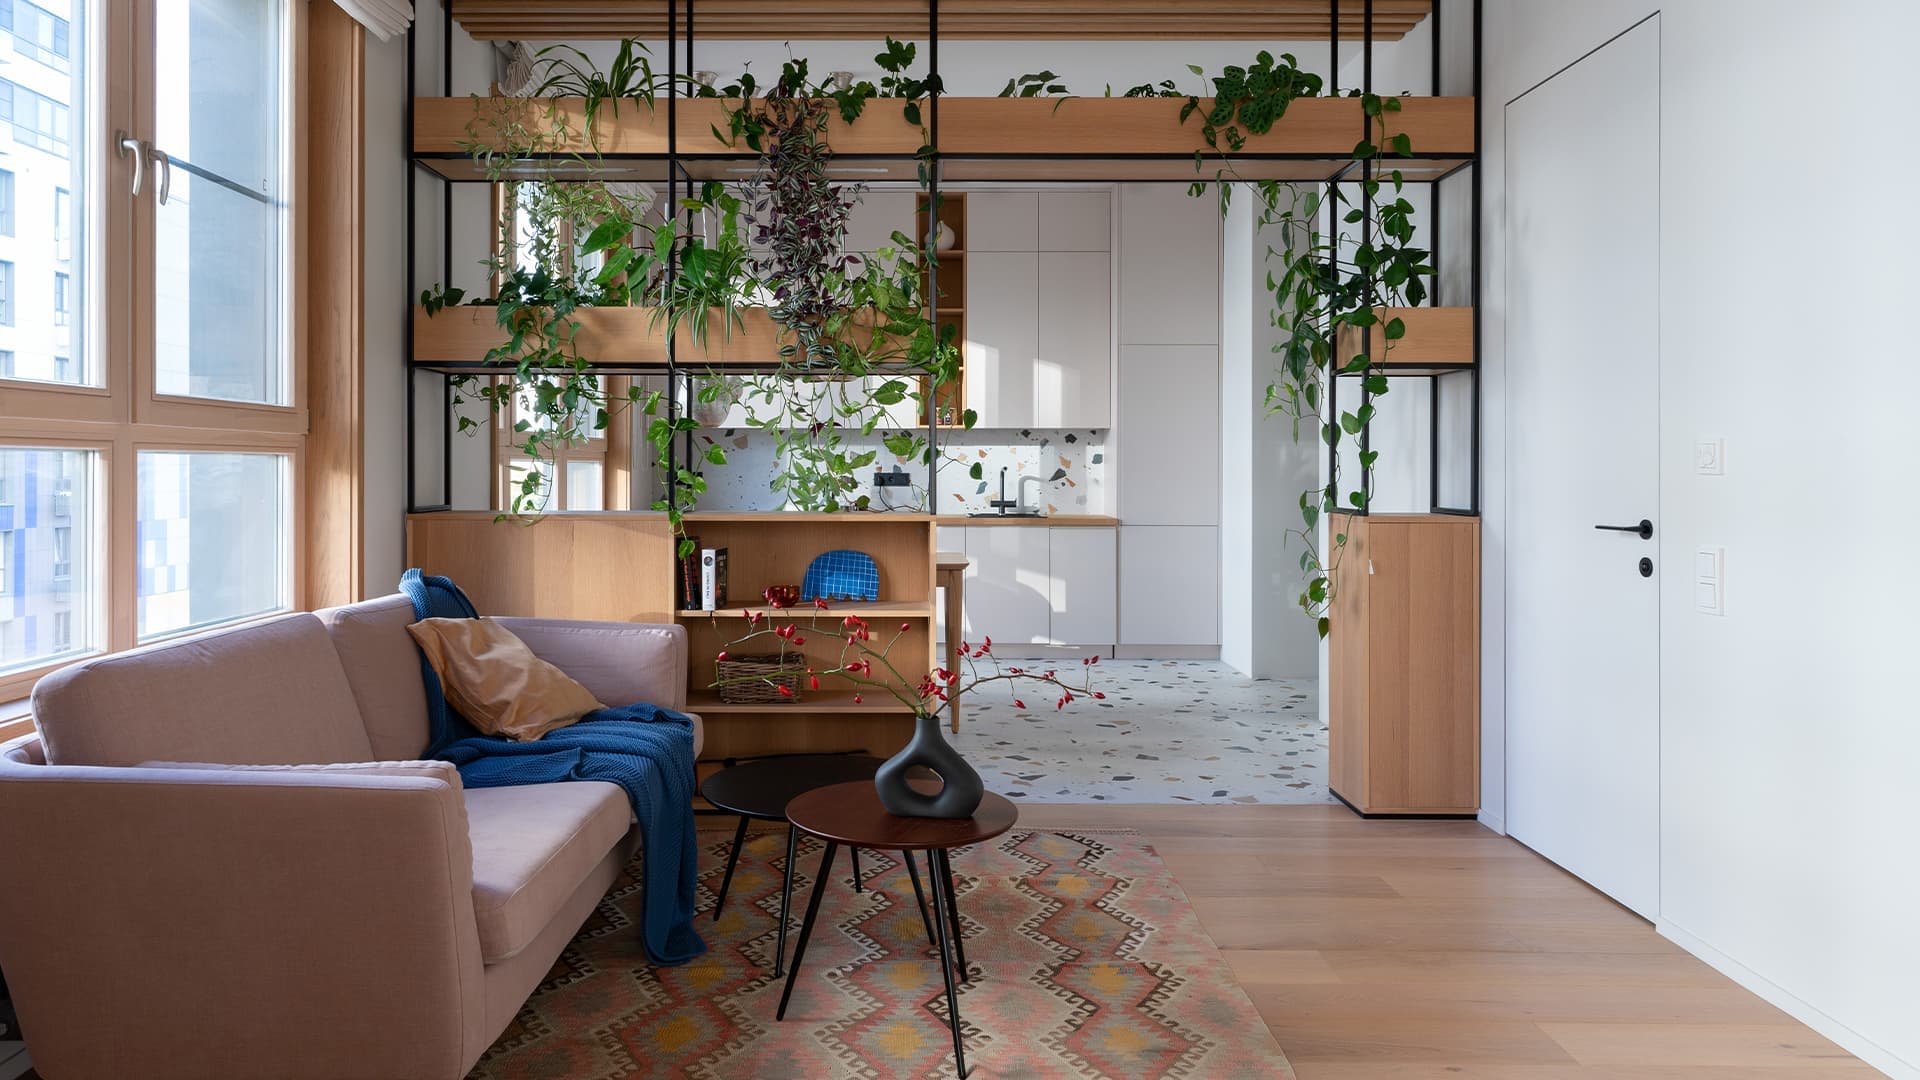 Медитативный интерьер московской квартиры с яркими деталями и живыми растениями — проект дизайн-студии КубКвадрат